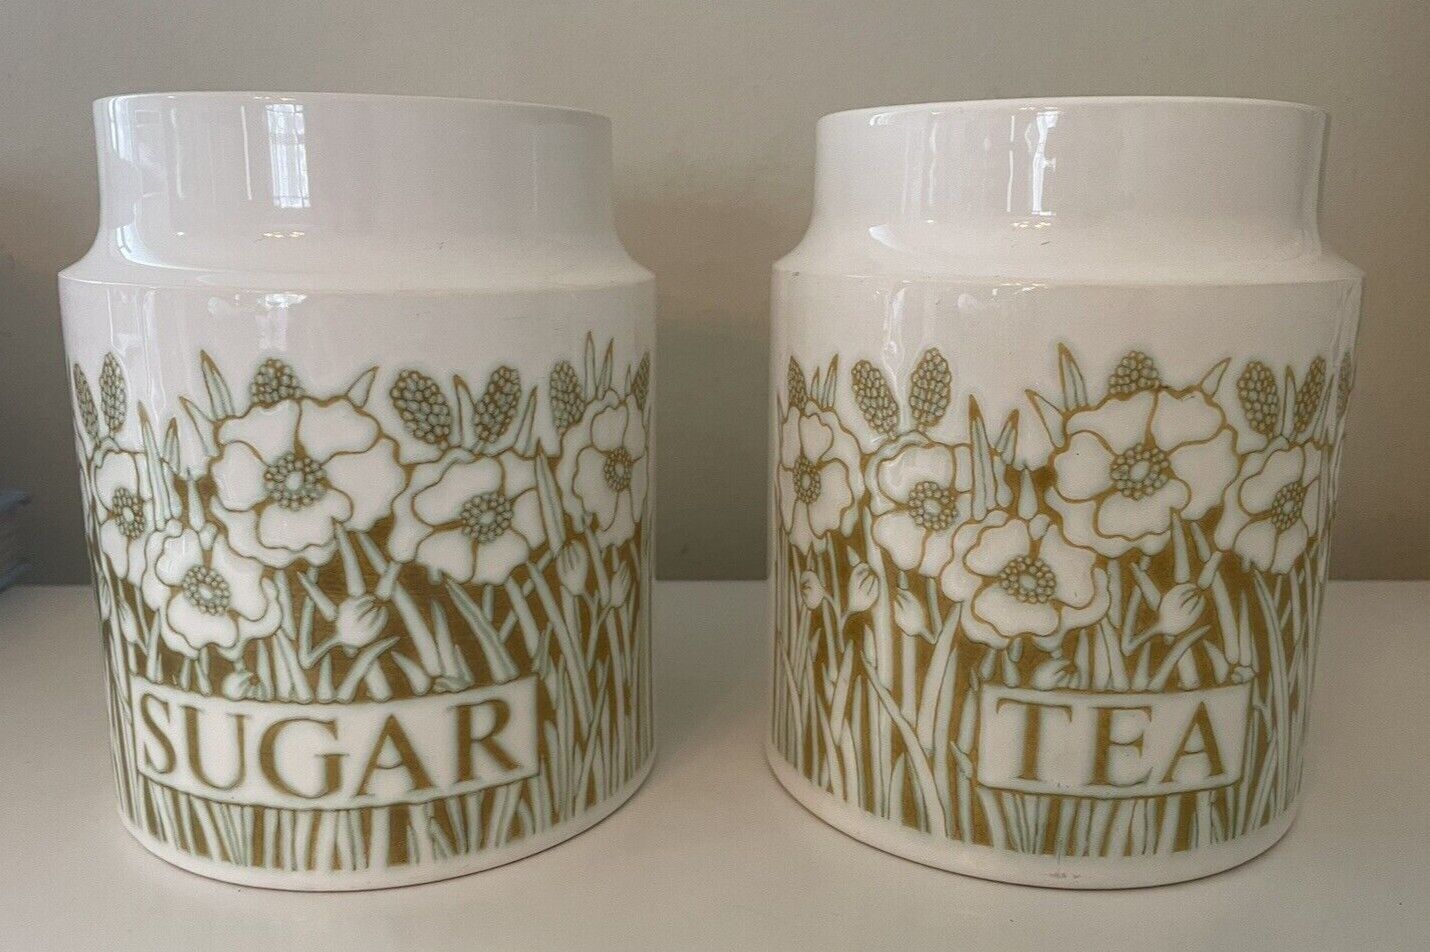 Vintage Hornsea Sugar and Tea Fleur Canister Set - England